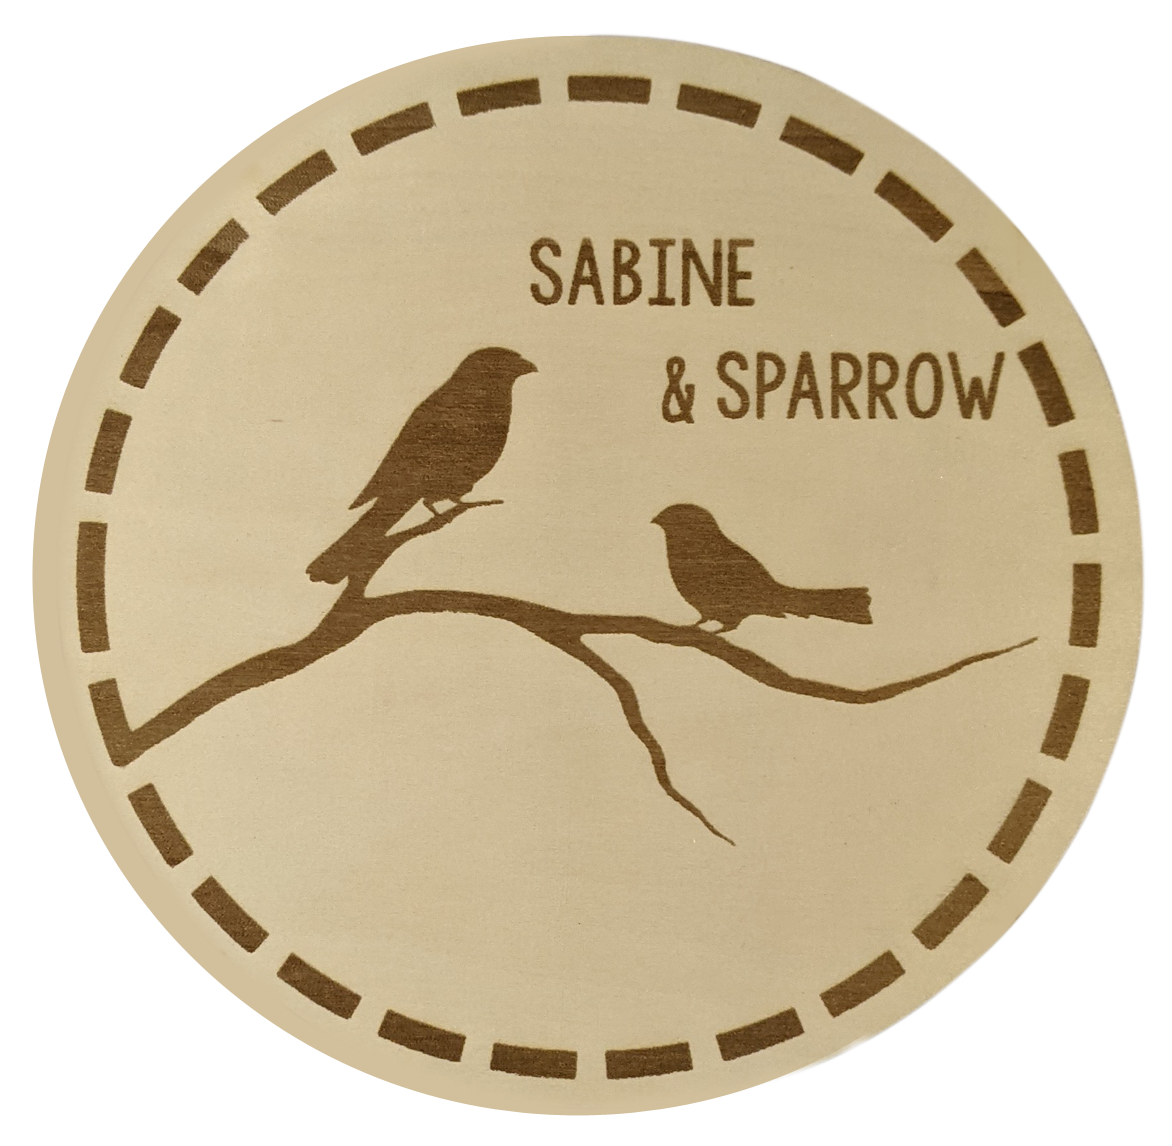 Sabine & Sparrow